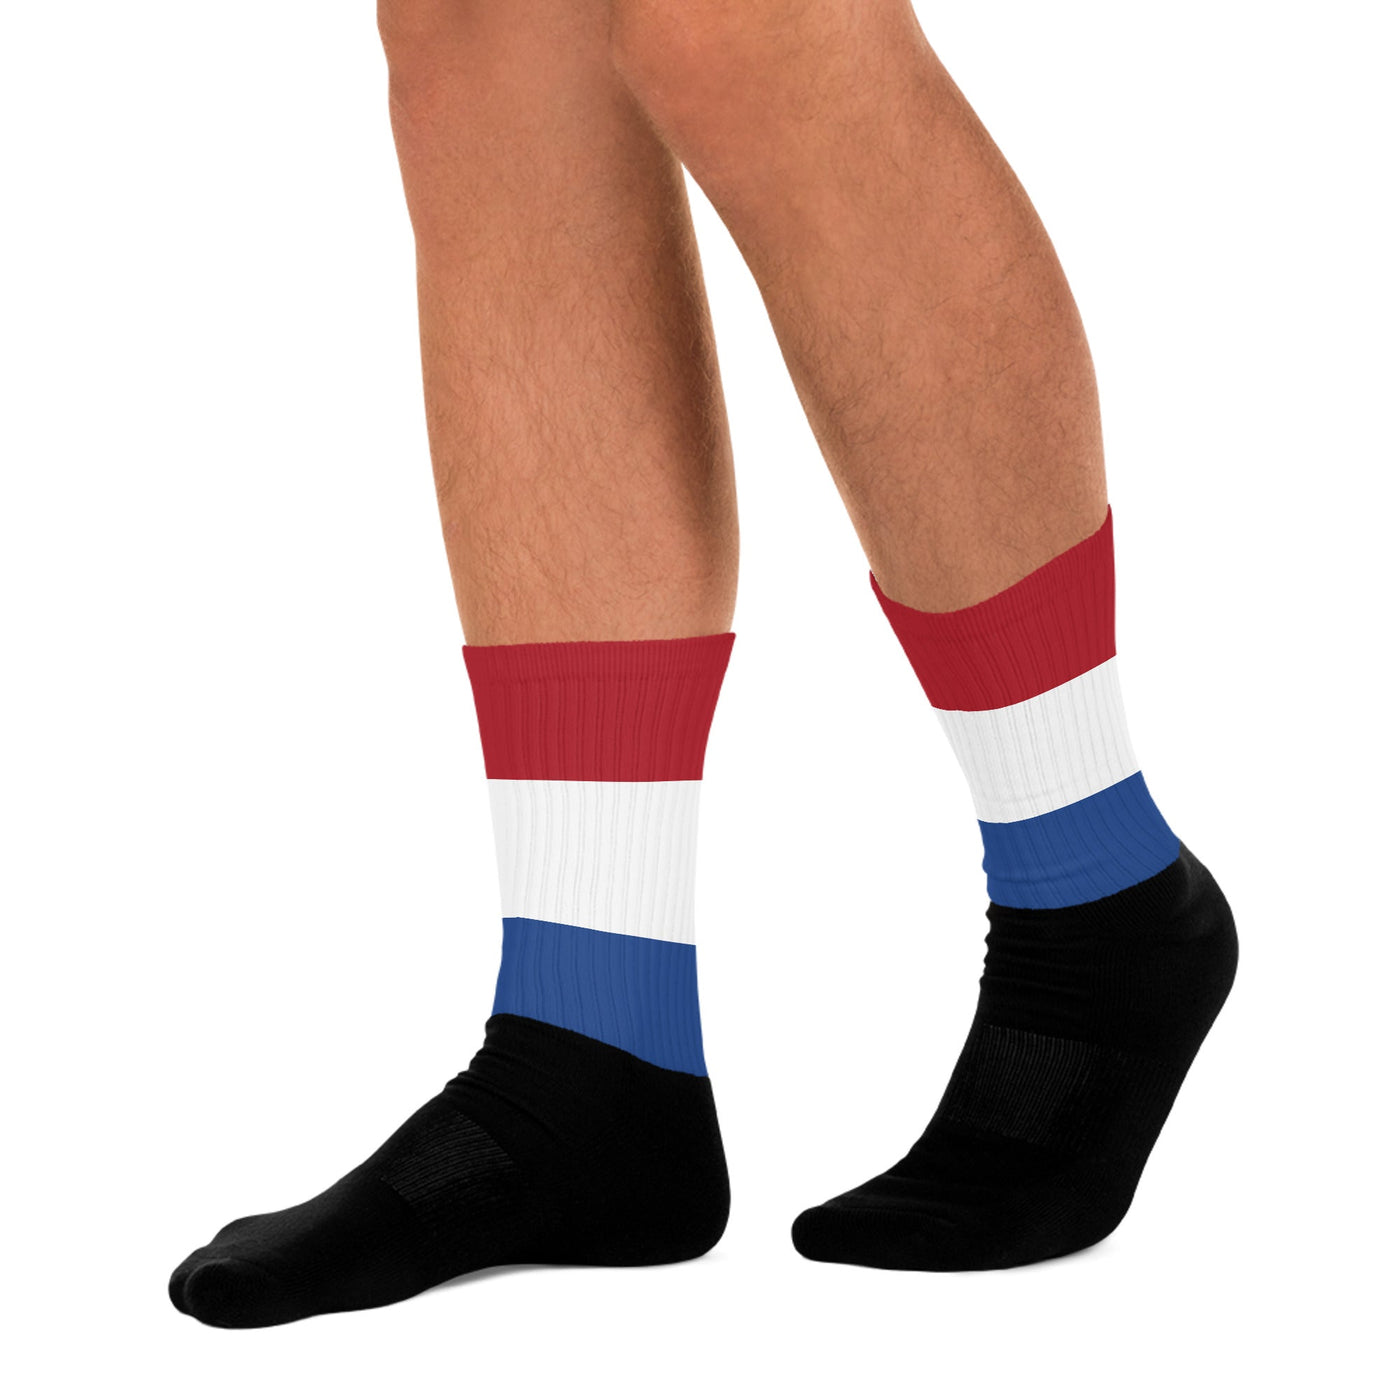 Netherlands Socks - Ezra's Clothing